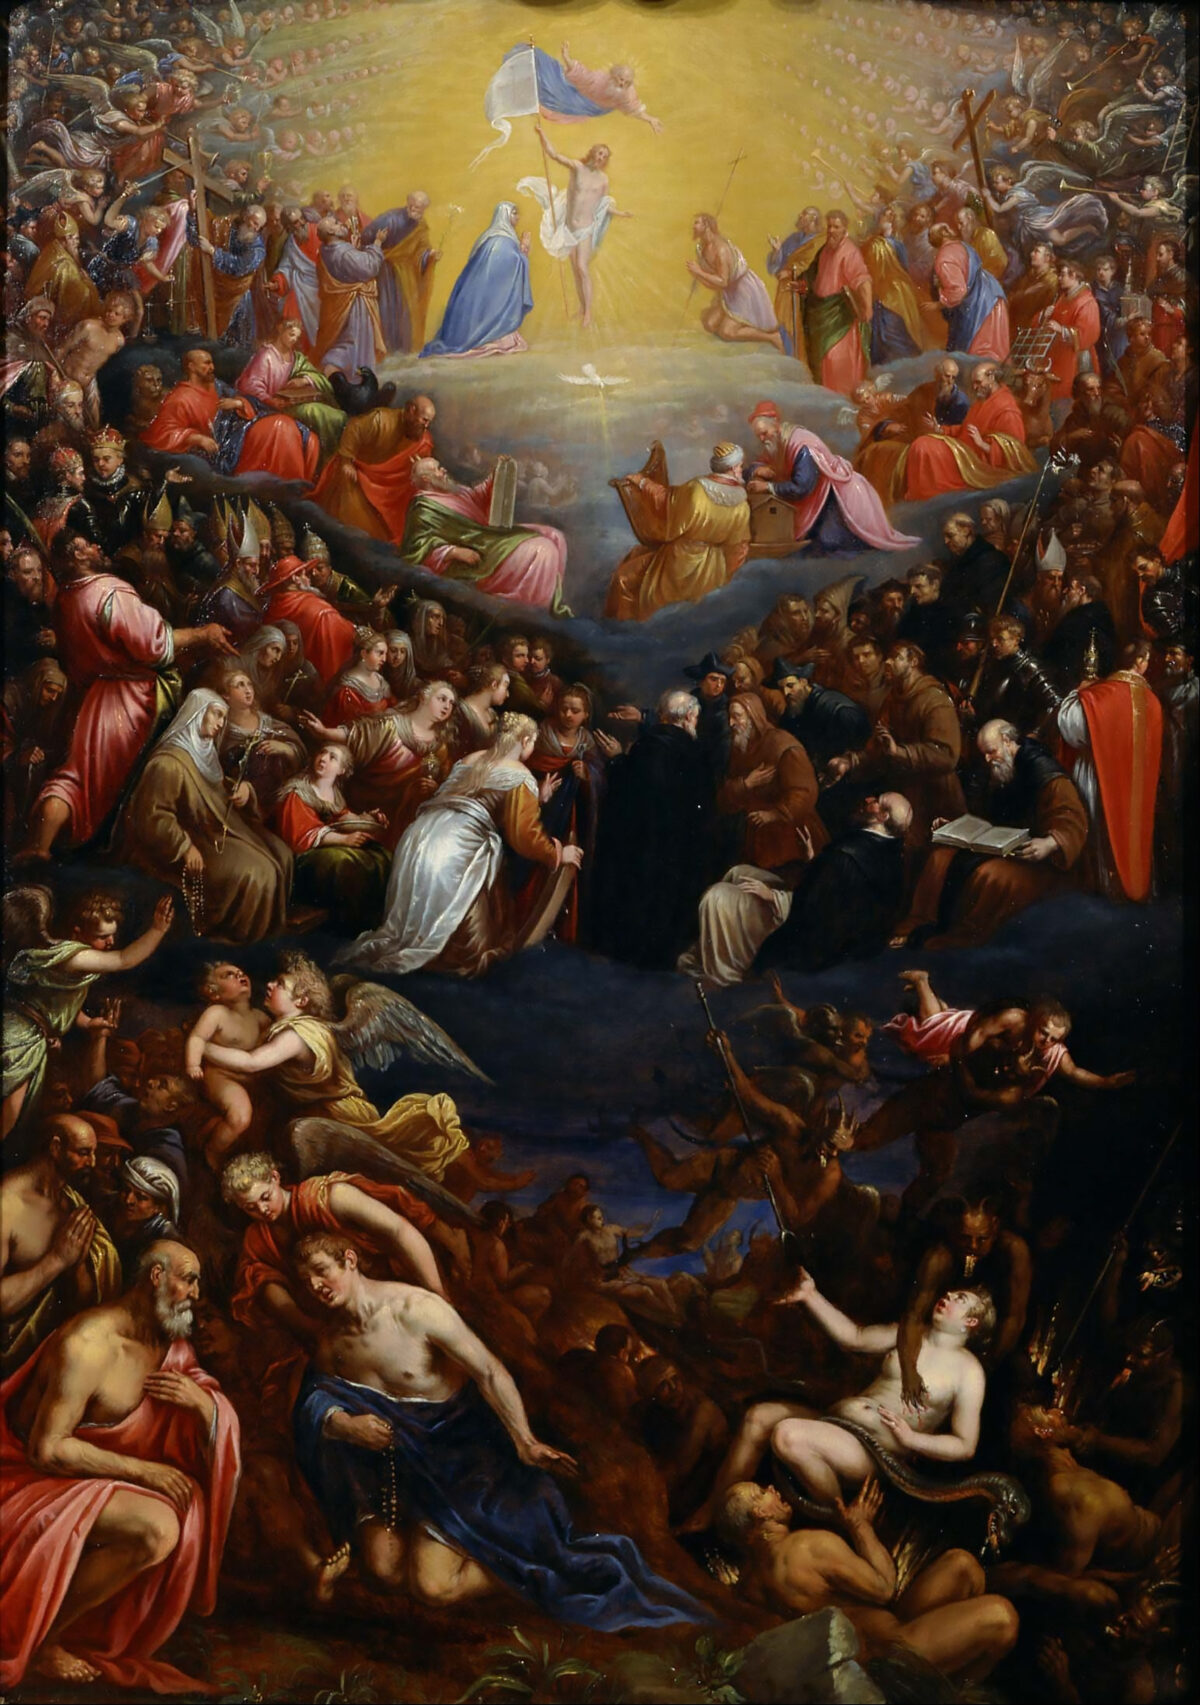 Gần như tất cả các tín ngưỡng đều nói về sự phán xét cuối cùng. “The Last Judgment” (Sự phán xét cuối cùng), khoảng năm 1595, của họa sĩ Leandro Bassano. National Museum of Western Art, Tokyo. (Ảnh: PD-US)